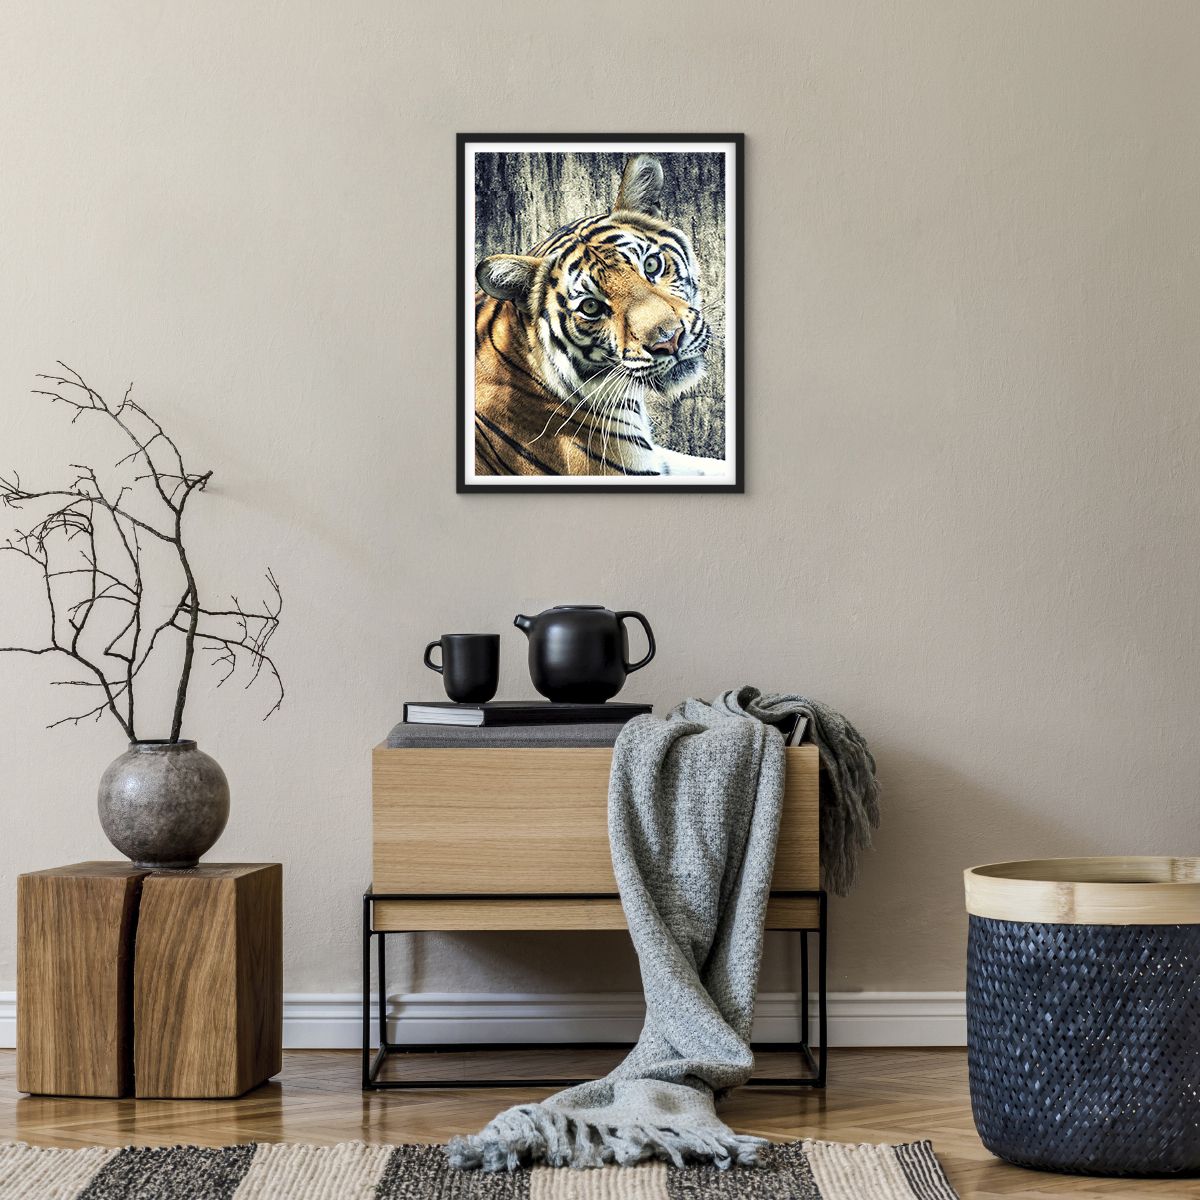 Poster in einem schwarzem Rahmen Tiere, Poster in einem schwarzem Rahmen Tiger, Poster in einem schwarzem Rahmen Afrika, Poster in einem schwarzem Rahmen Wildes Tier, Poster in einem schwarzem Rahmen Indien